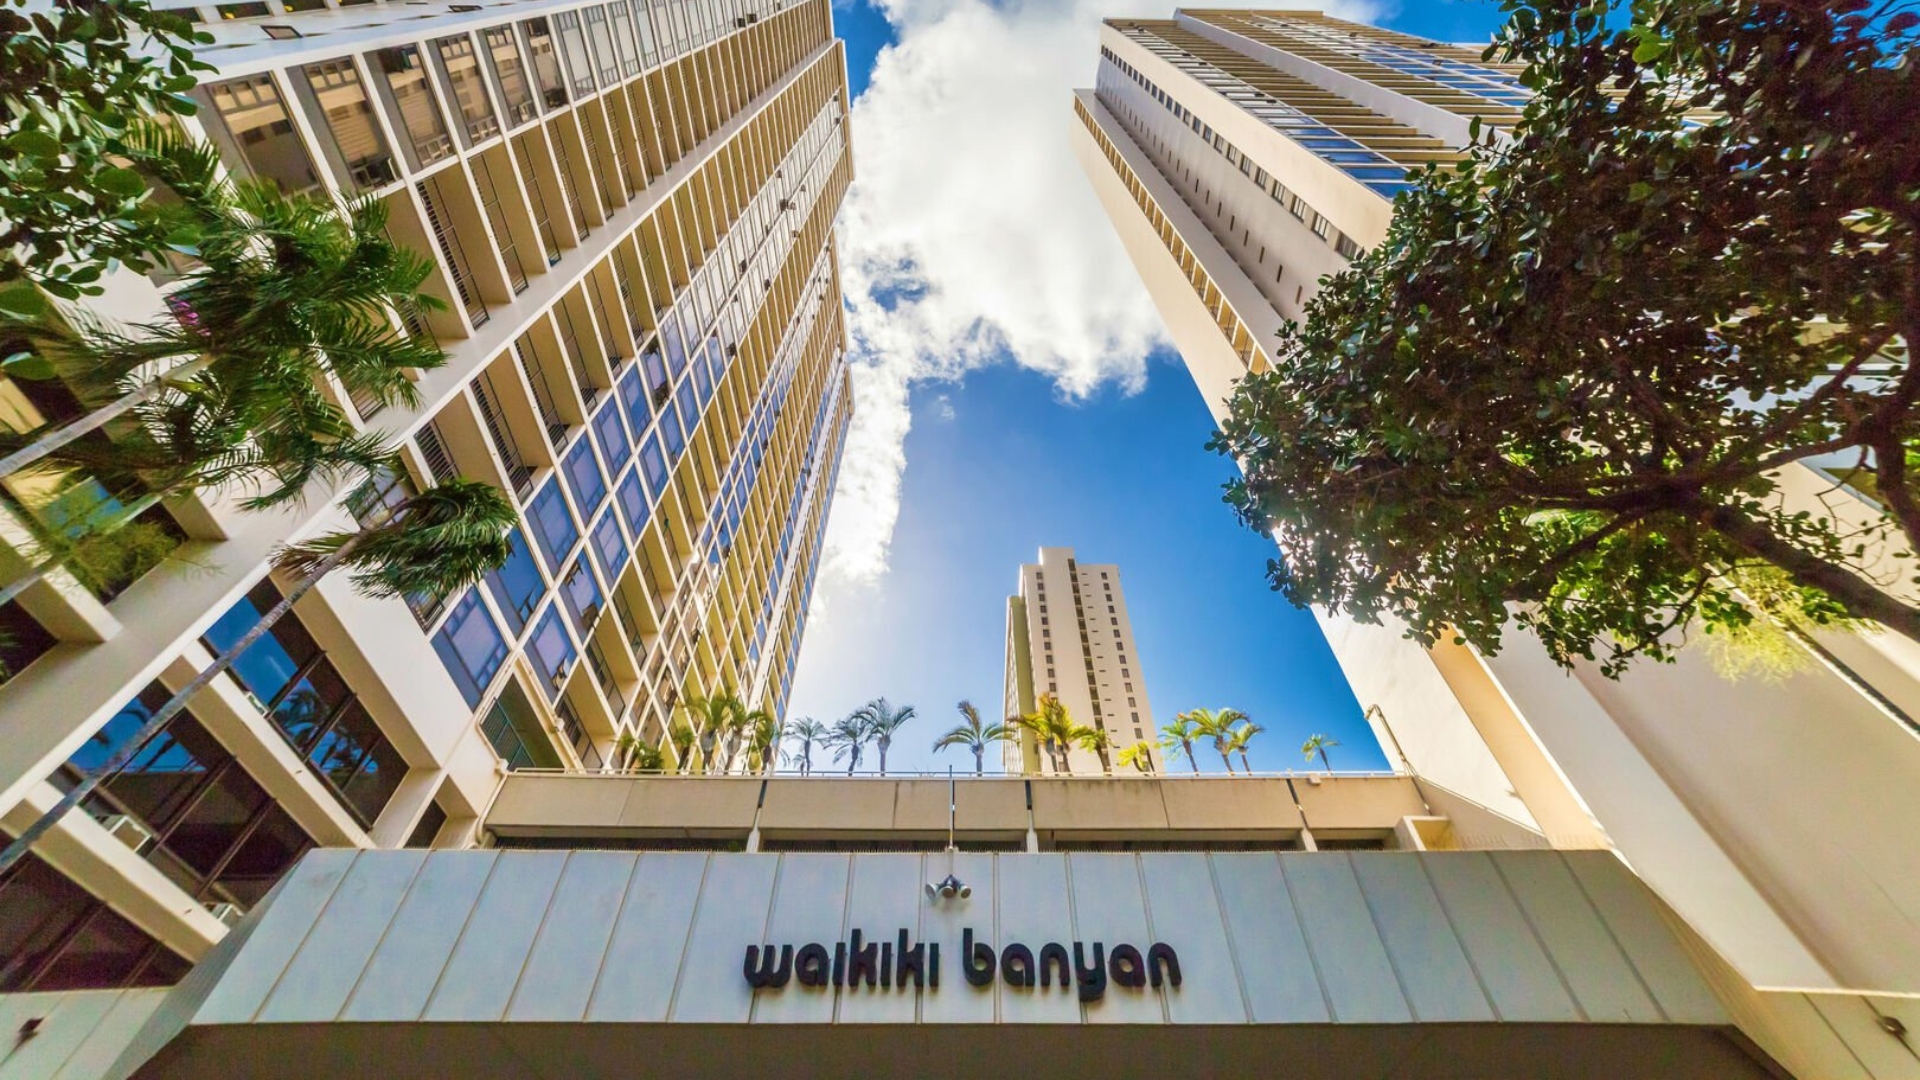 Waikiki Banyan - Legal Vacation Rental Condos on Oahu